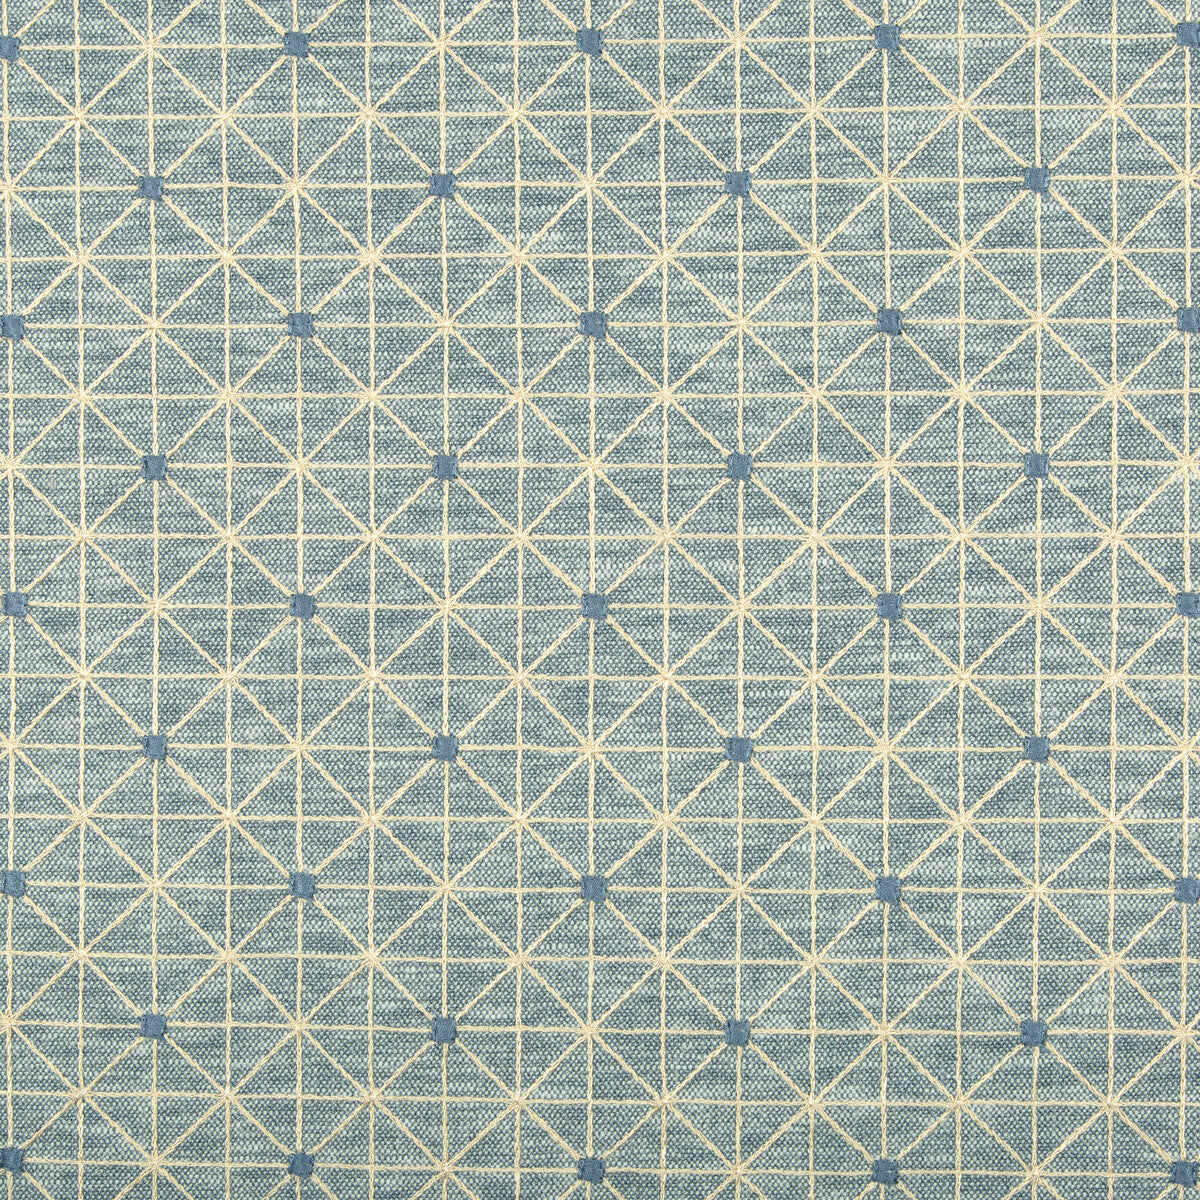 Kravet Basics fabric in 36128-516 color - pattern 36128.516.0 - by Kravet Basics